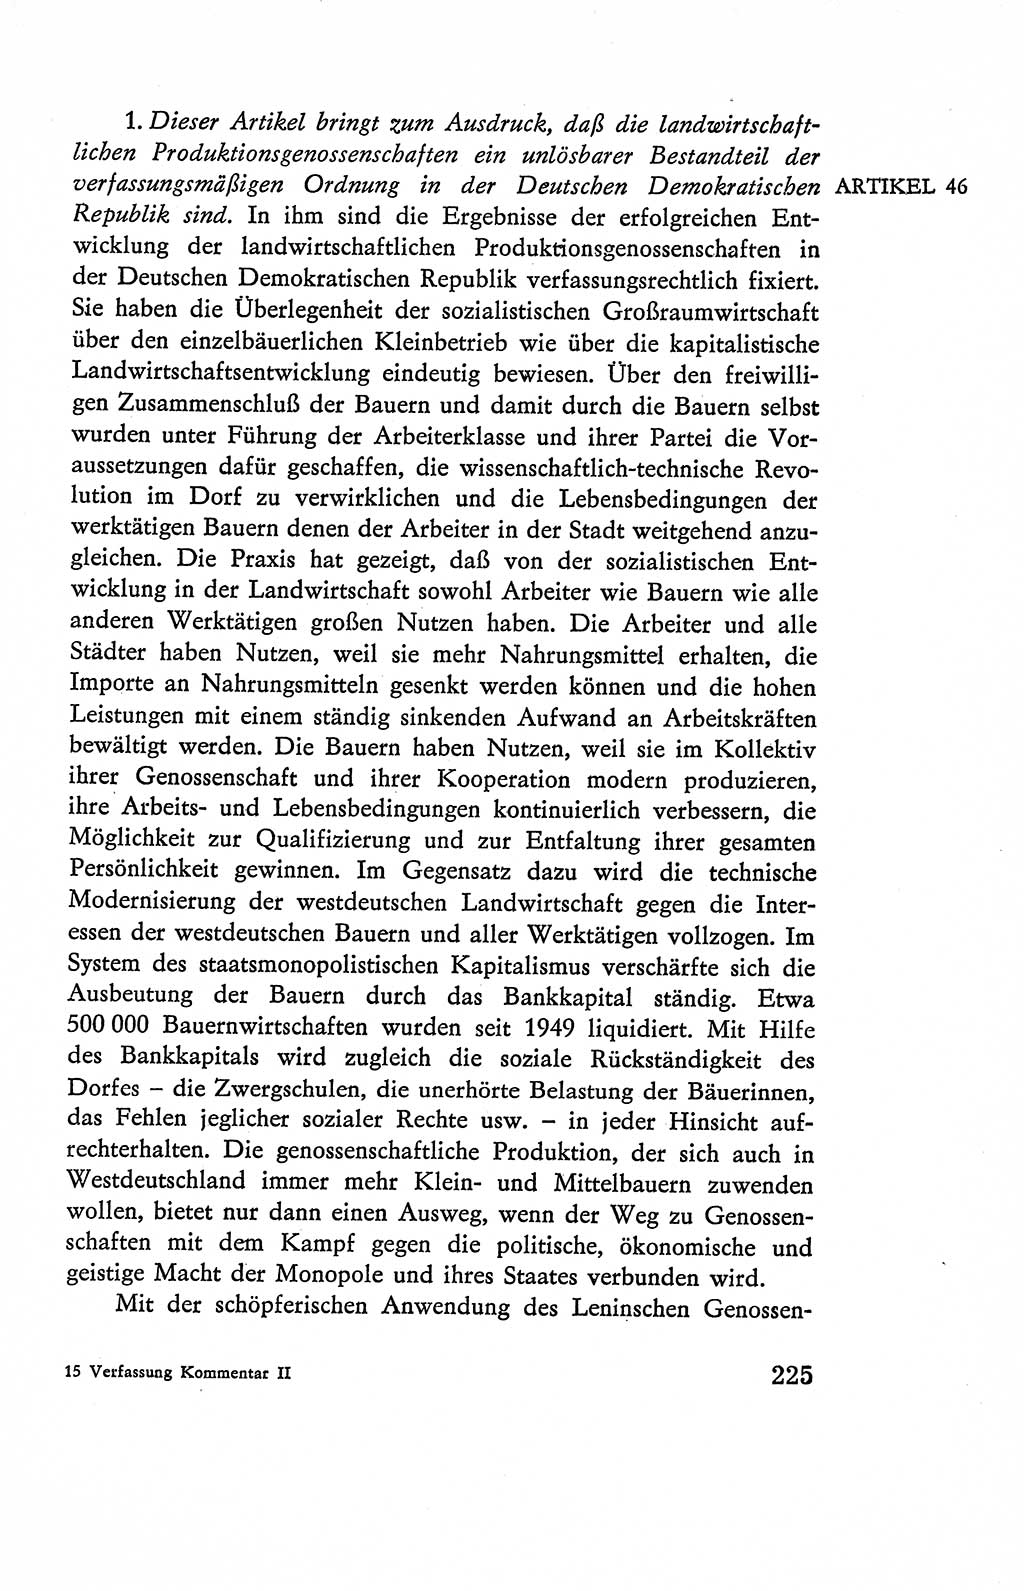 Verfassung der Deutschen Demokratischen Republik (DDR), Dokumente, Kommentar 1969, Band 2, Seite 225 (Verf. DDR Dok. Komm. 1969, Bd. 2, S. 225)